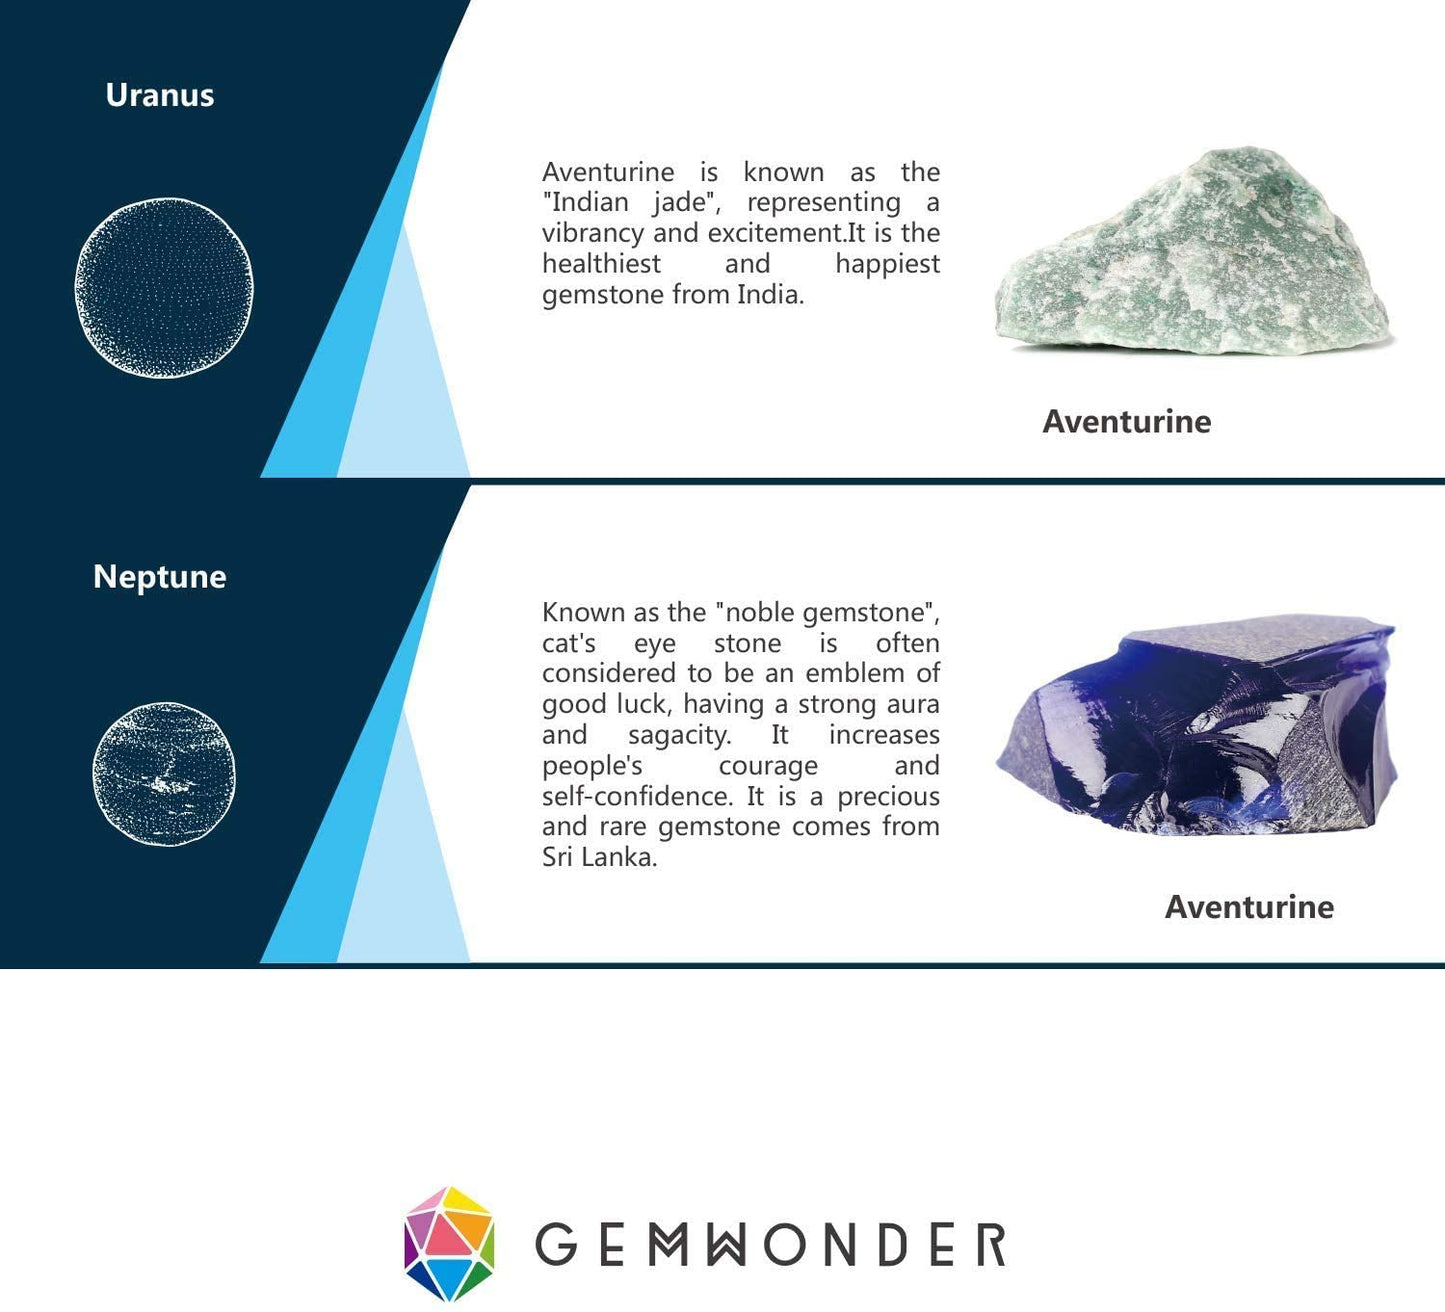 Information about gemstones called Aventurine and Blue Aventurine